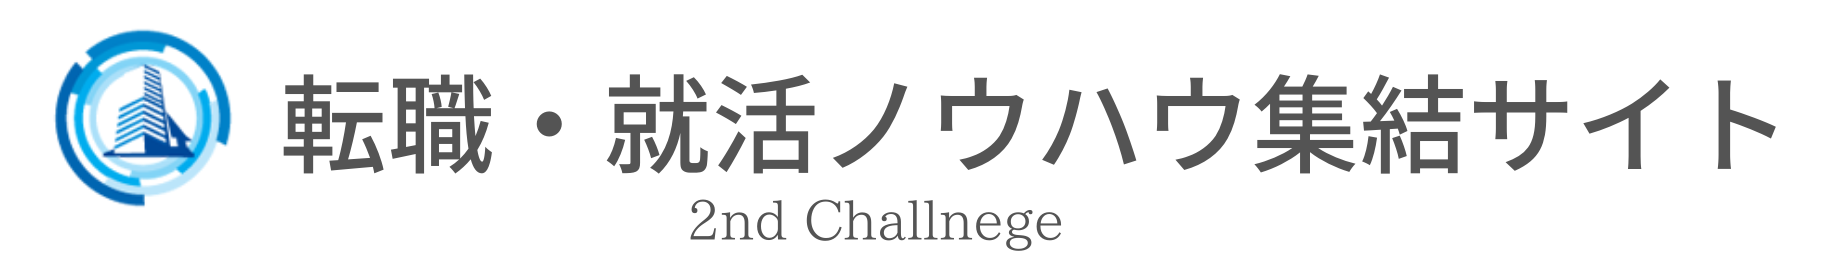 転職・就職ノウハウ集結サイト「2nd challenge」